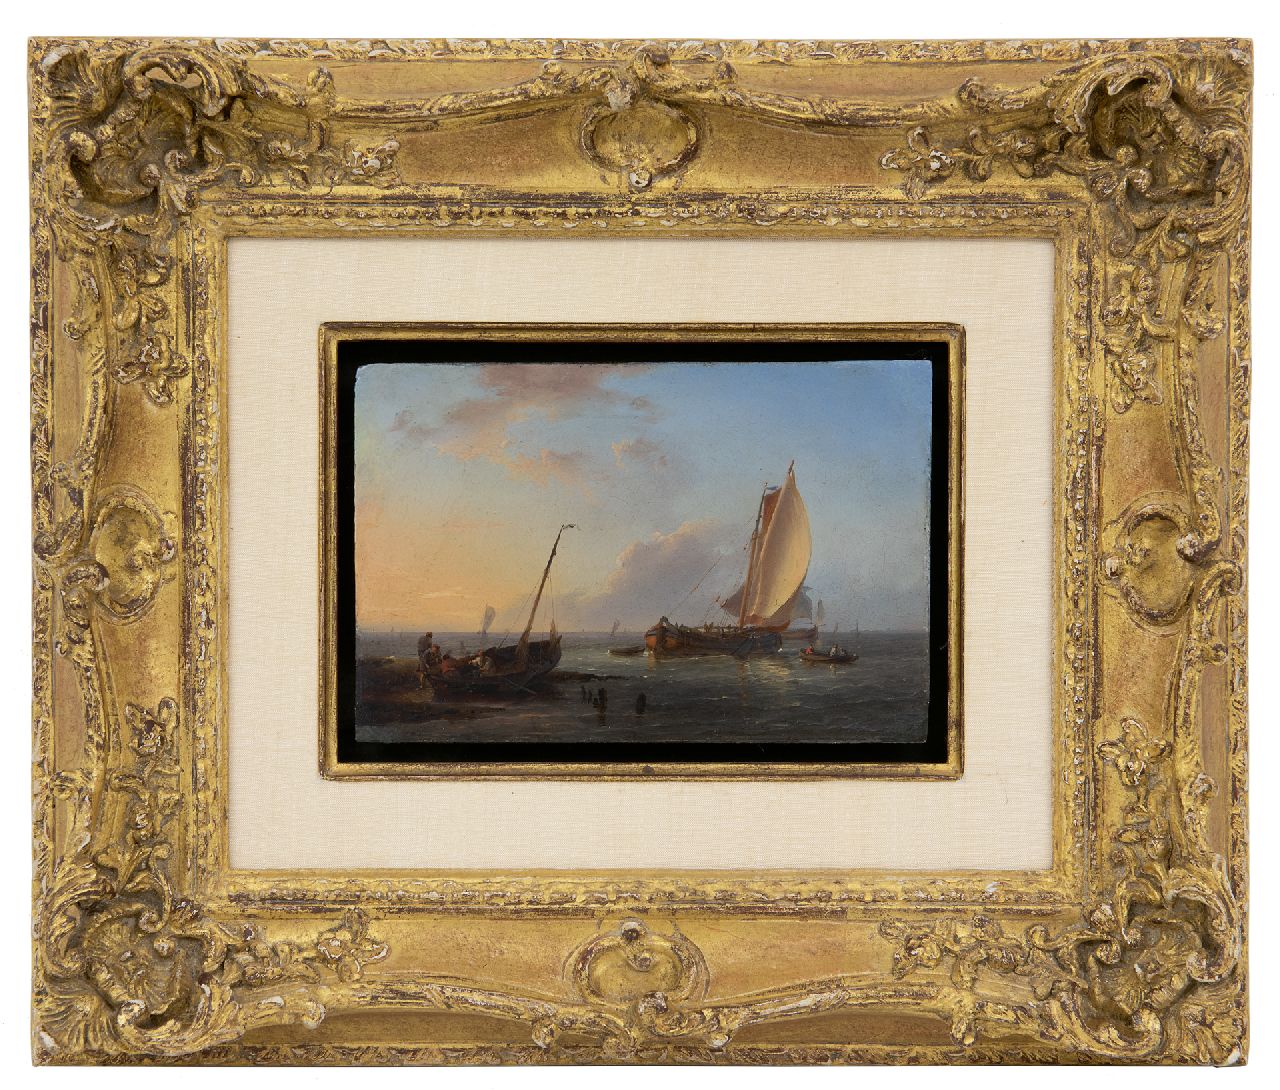 Koekkoek H.  | Hermanus Koekkoek | Schilderijen te koop aangeboden | Vissers en zeilschepen voor de kust, olieverf op blik op paneel 9,8 x 14,7 cm, gesigneerd linksonder met initialen